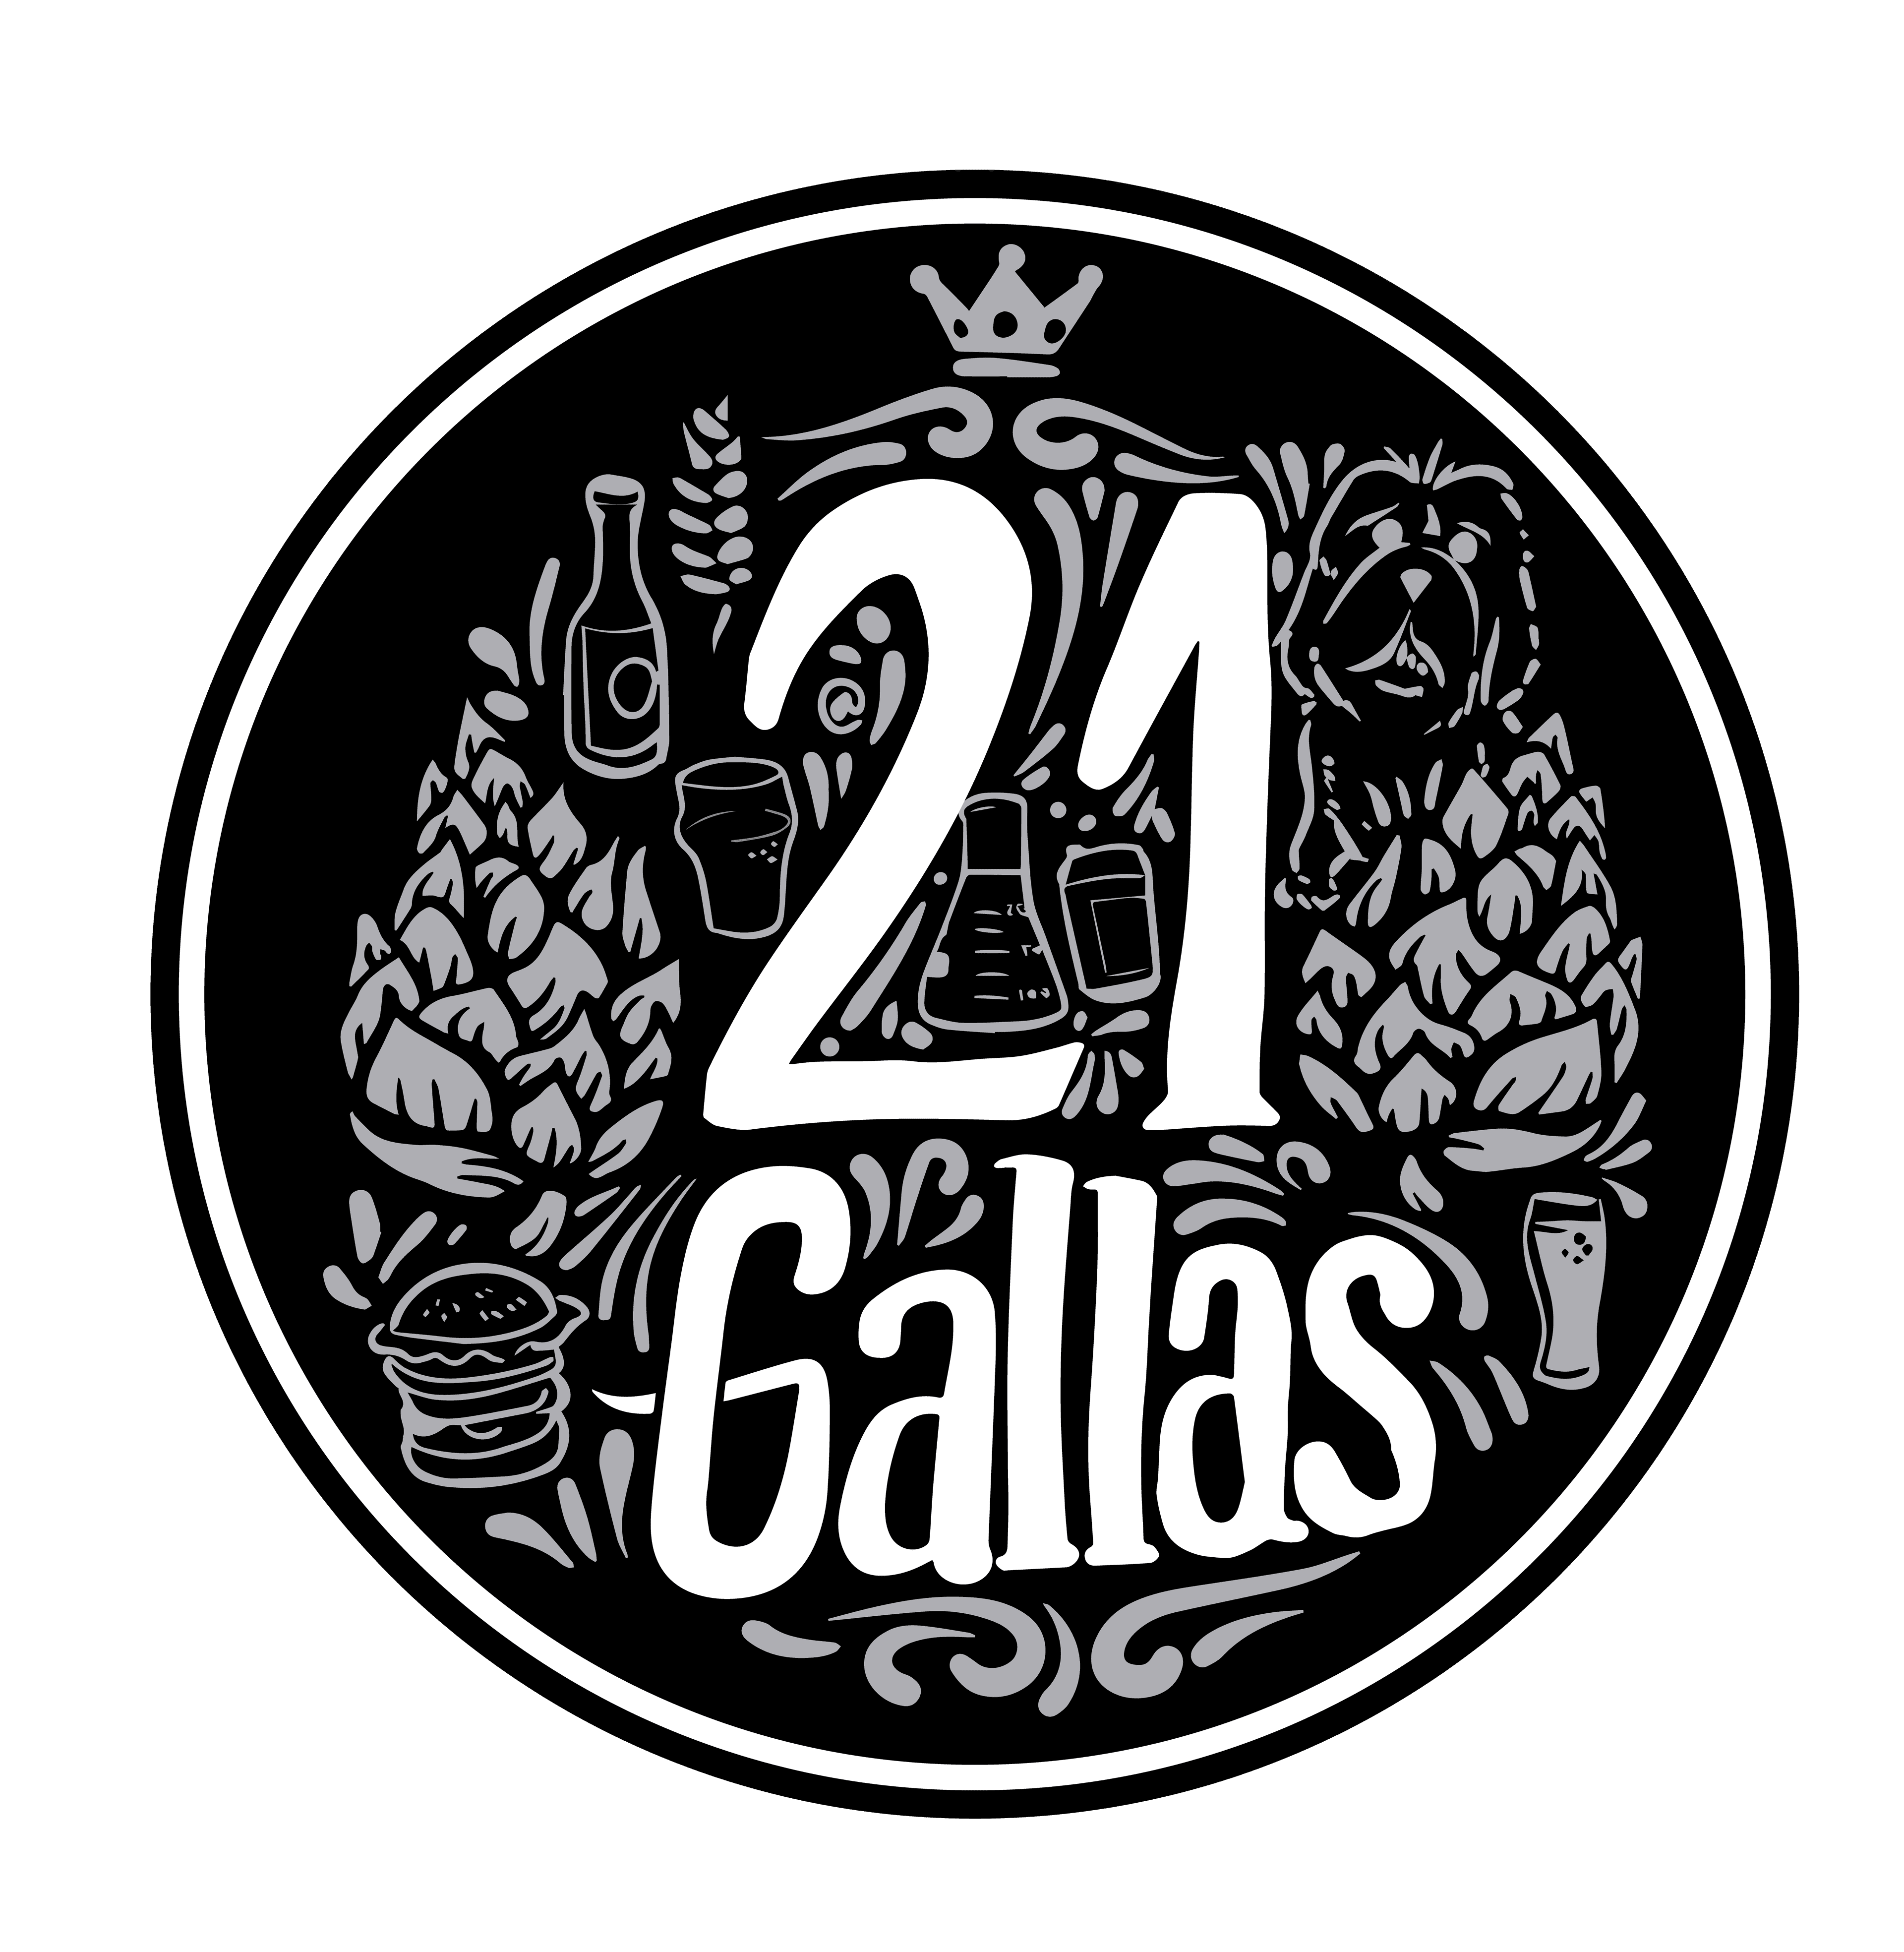 21 Gallas Brewpub Craft Beer, Exclusive Hire photo #1